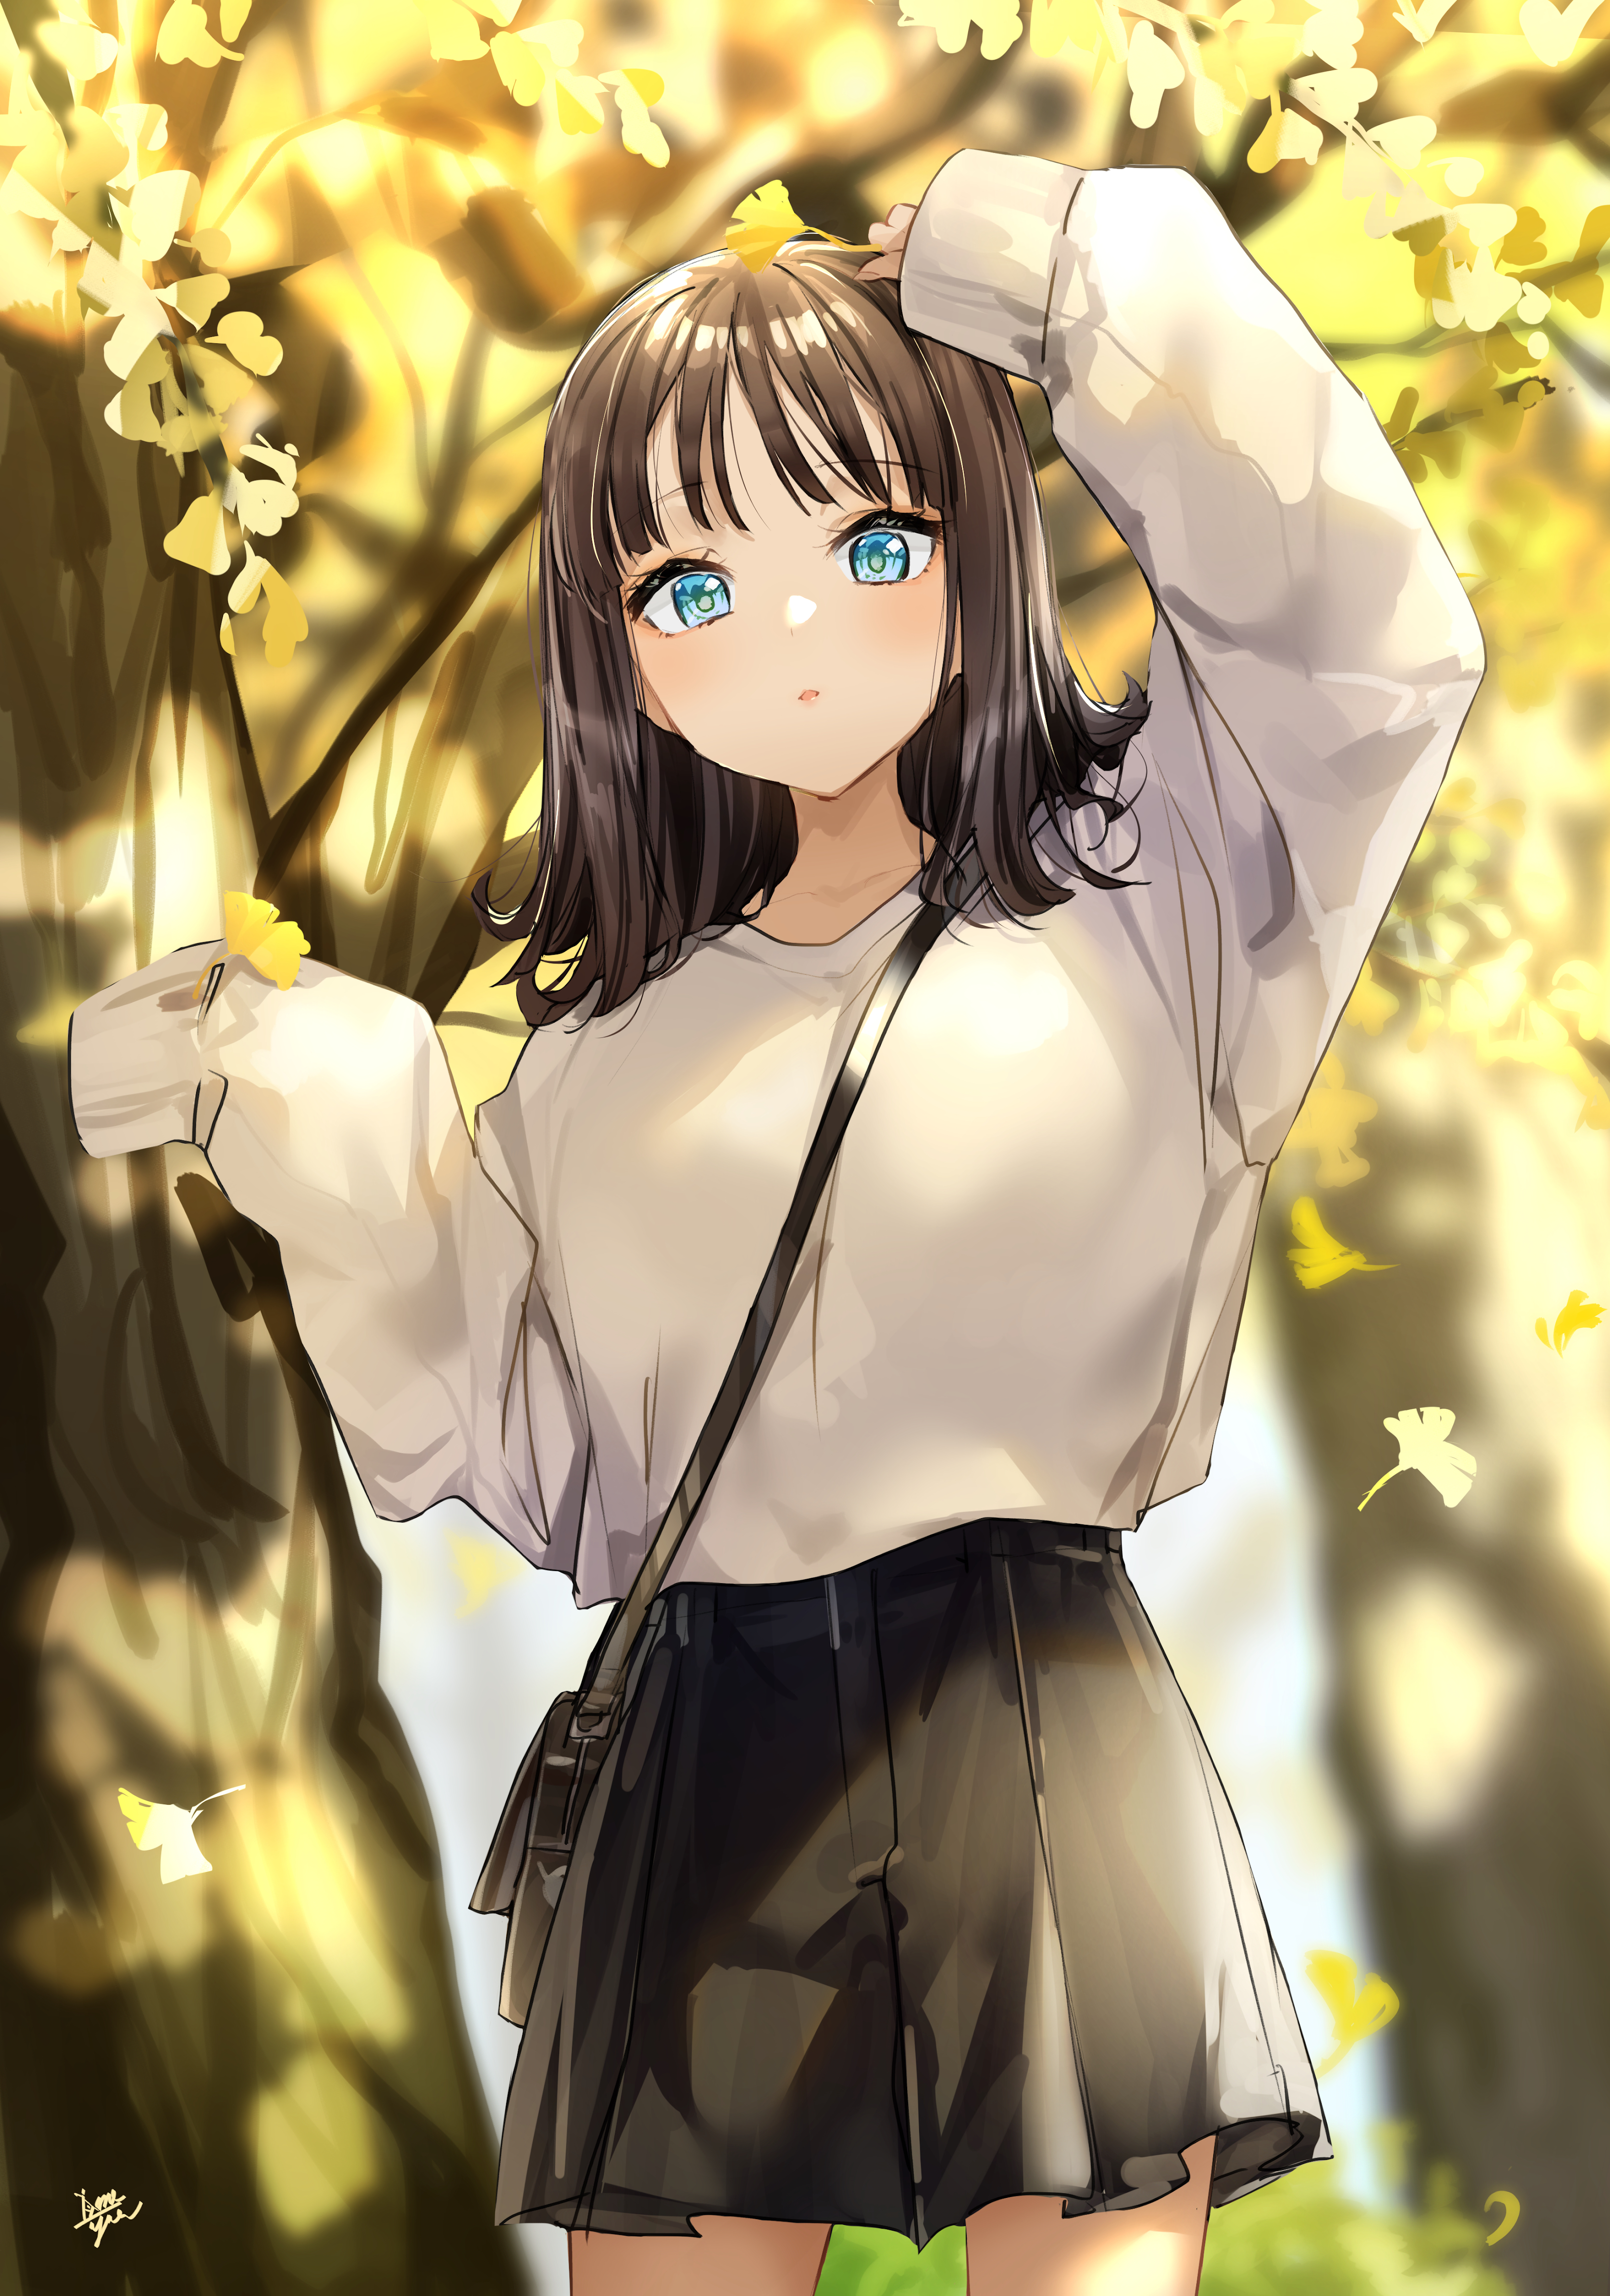 Anime 3349x4776 anime anime girls digital art artwork 2D portrait display Takenoko No You brunette blue eyes sweater skirt